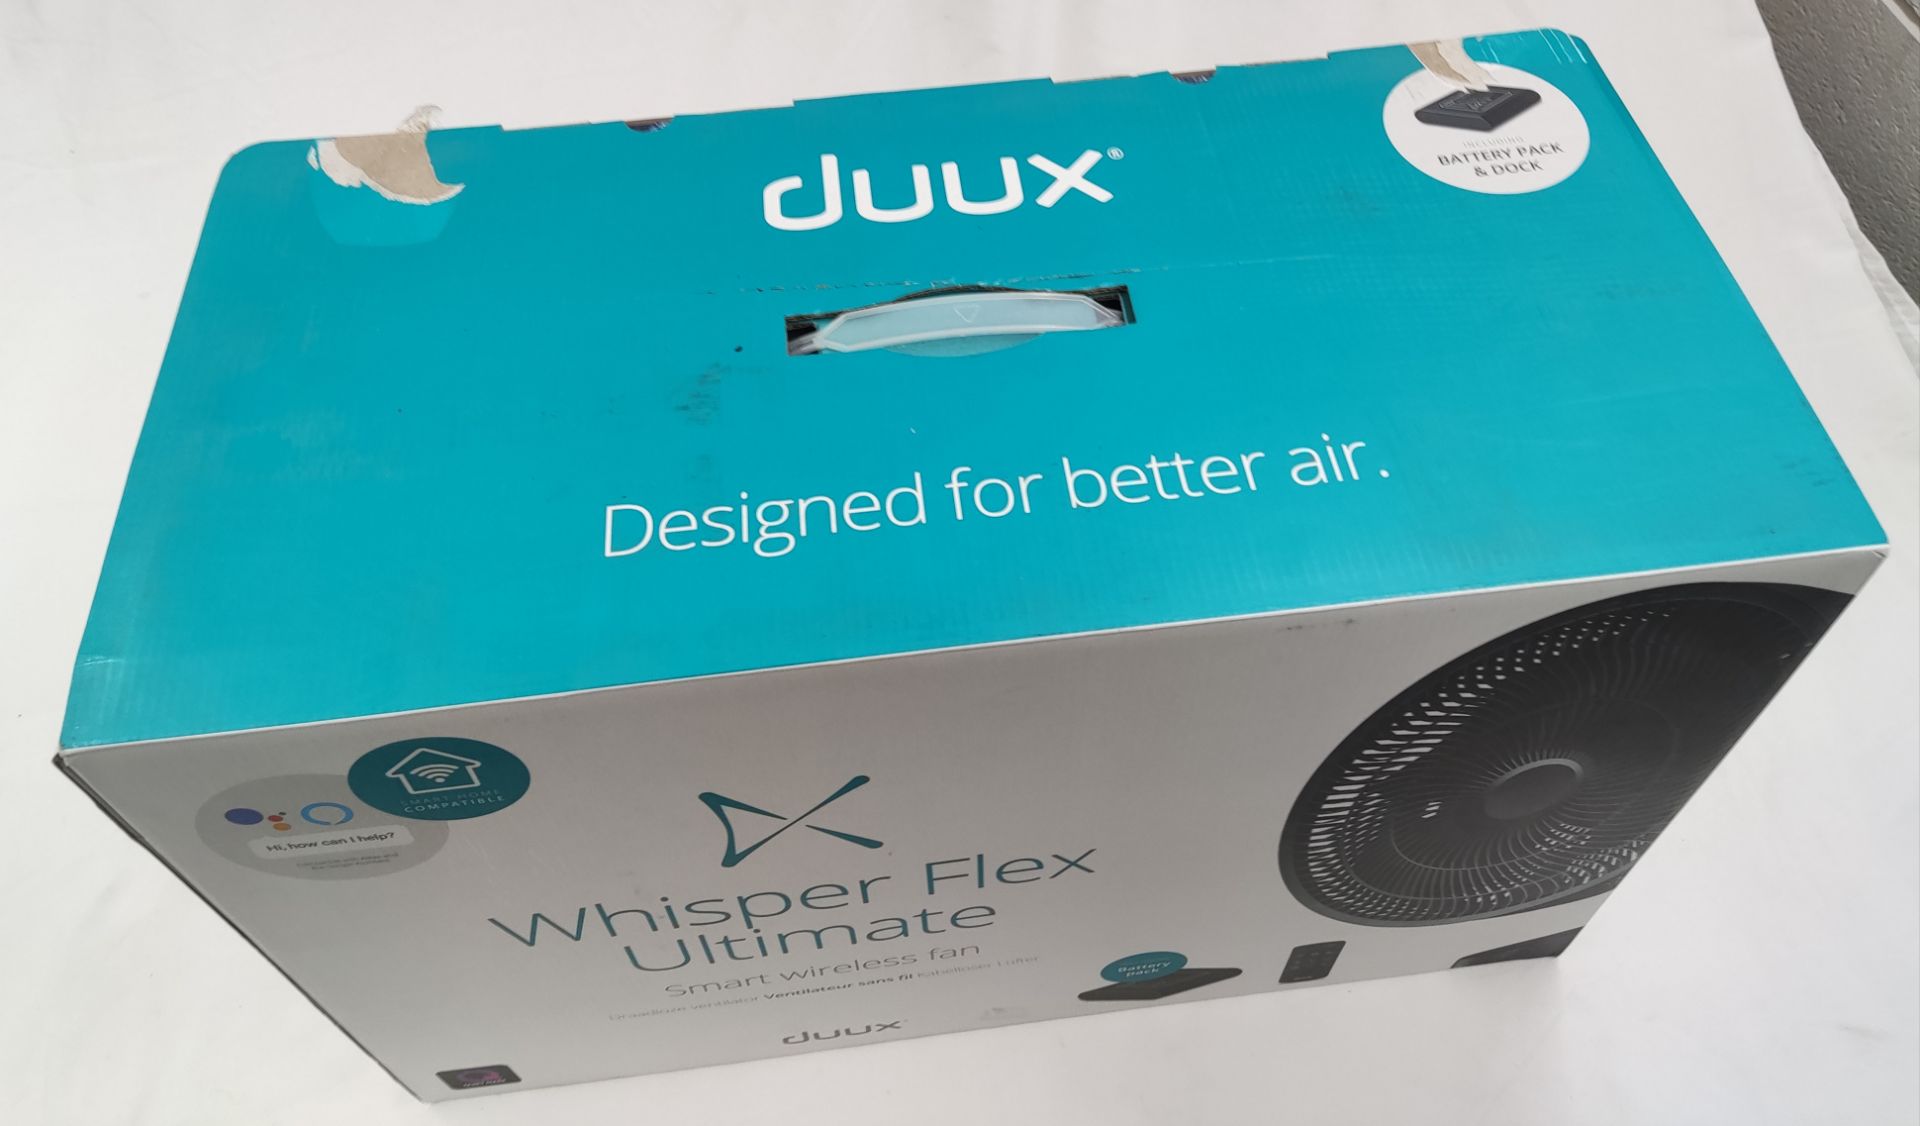 1 x DUUX Whisper Flex Ultimate Smart Wireless Fan - Boxed - RRP £249.99 - Ref: /HOC299/HC6 - CL987 - - Image 4 of 19